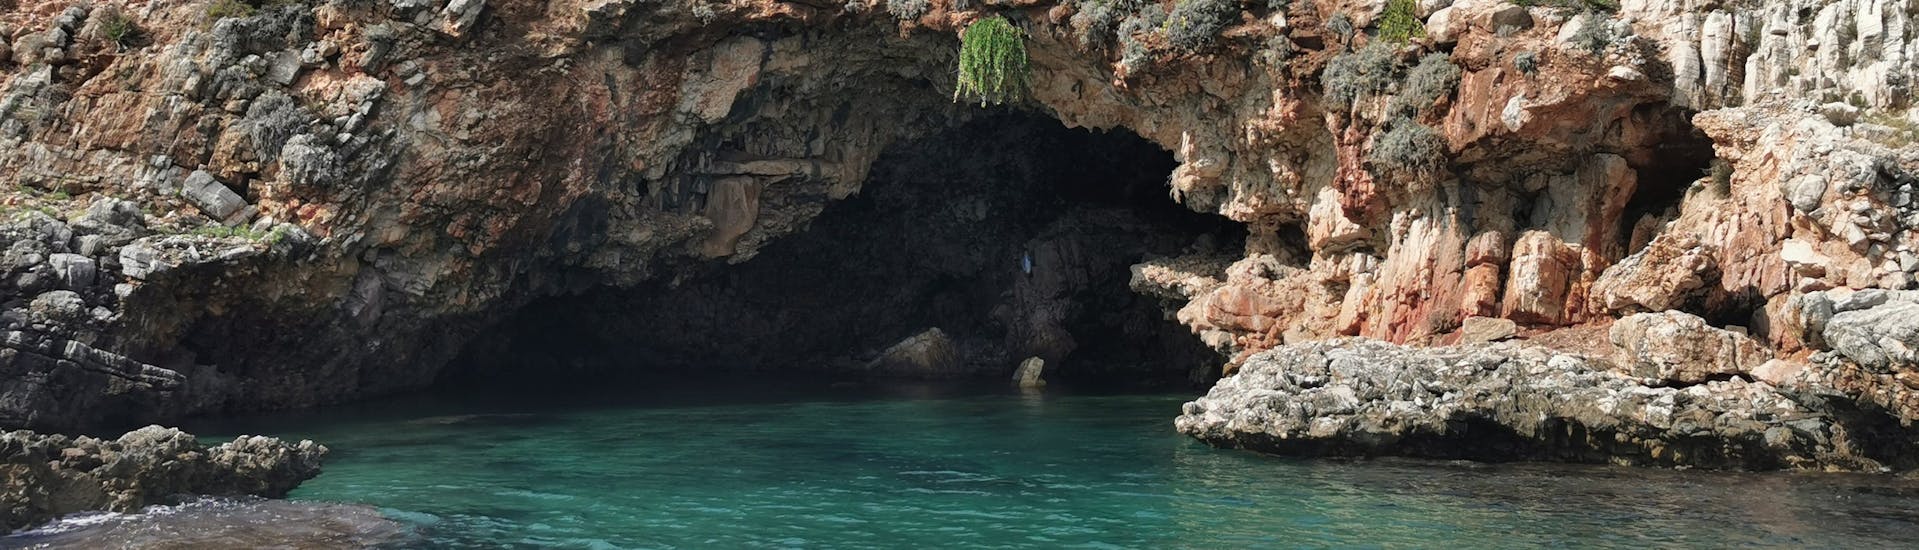 La costa de Riserva dello Zingaro tiene muchas cuevas hermosas que se pueden admirar durante el viaje en barco desde Castellamare a Riserva dello Zingaro.